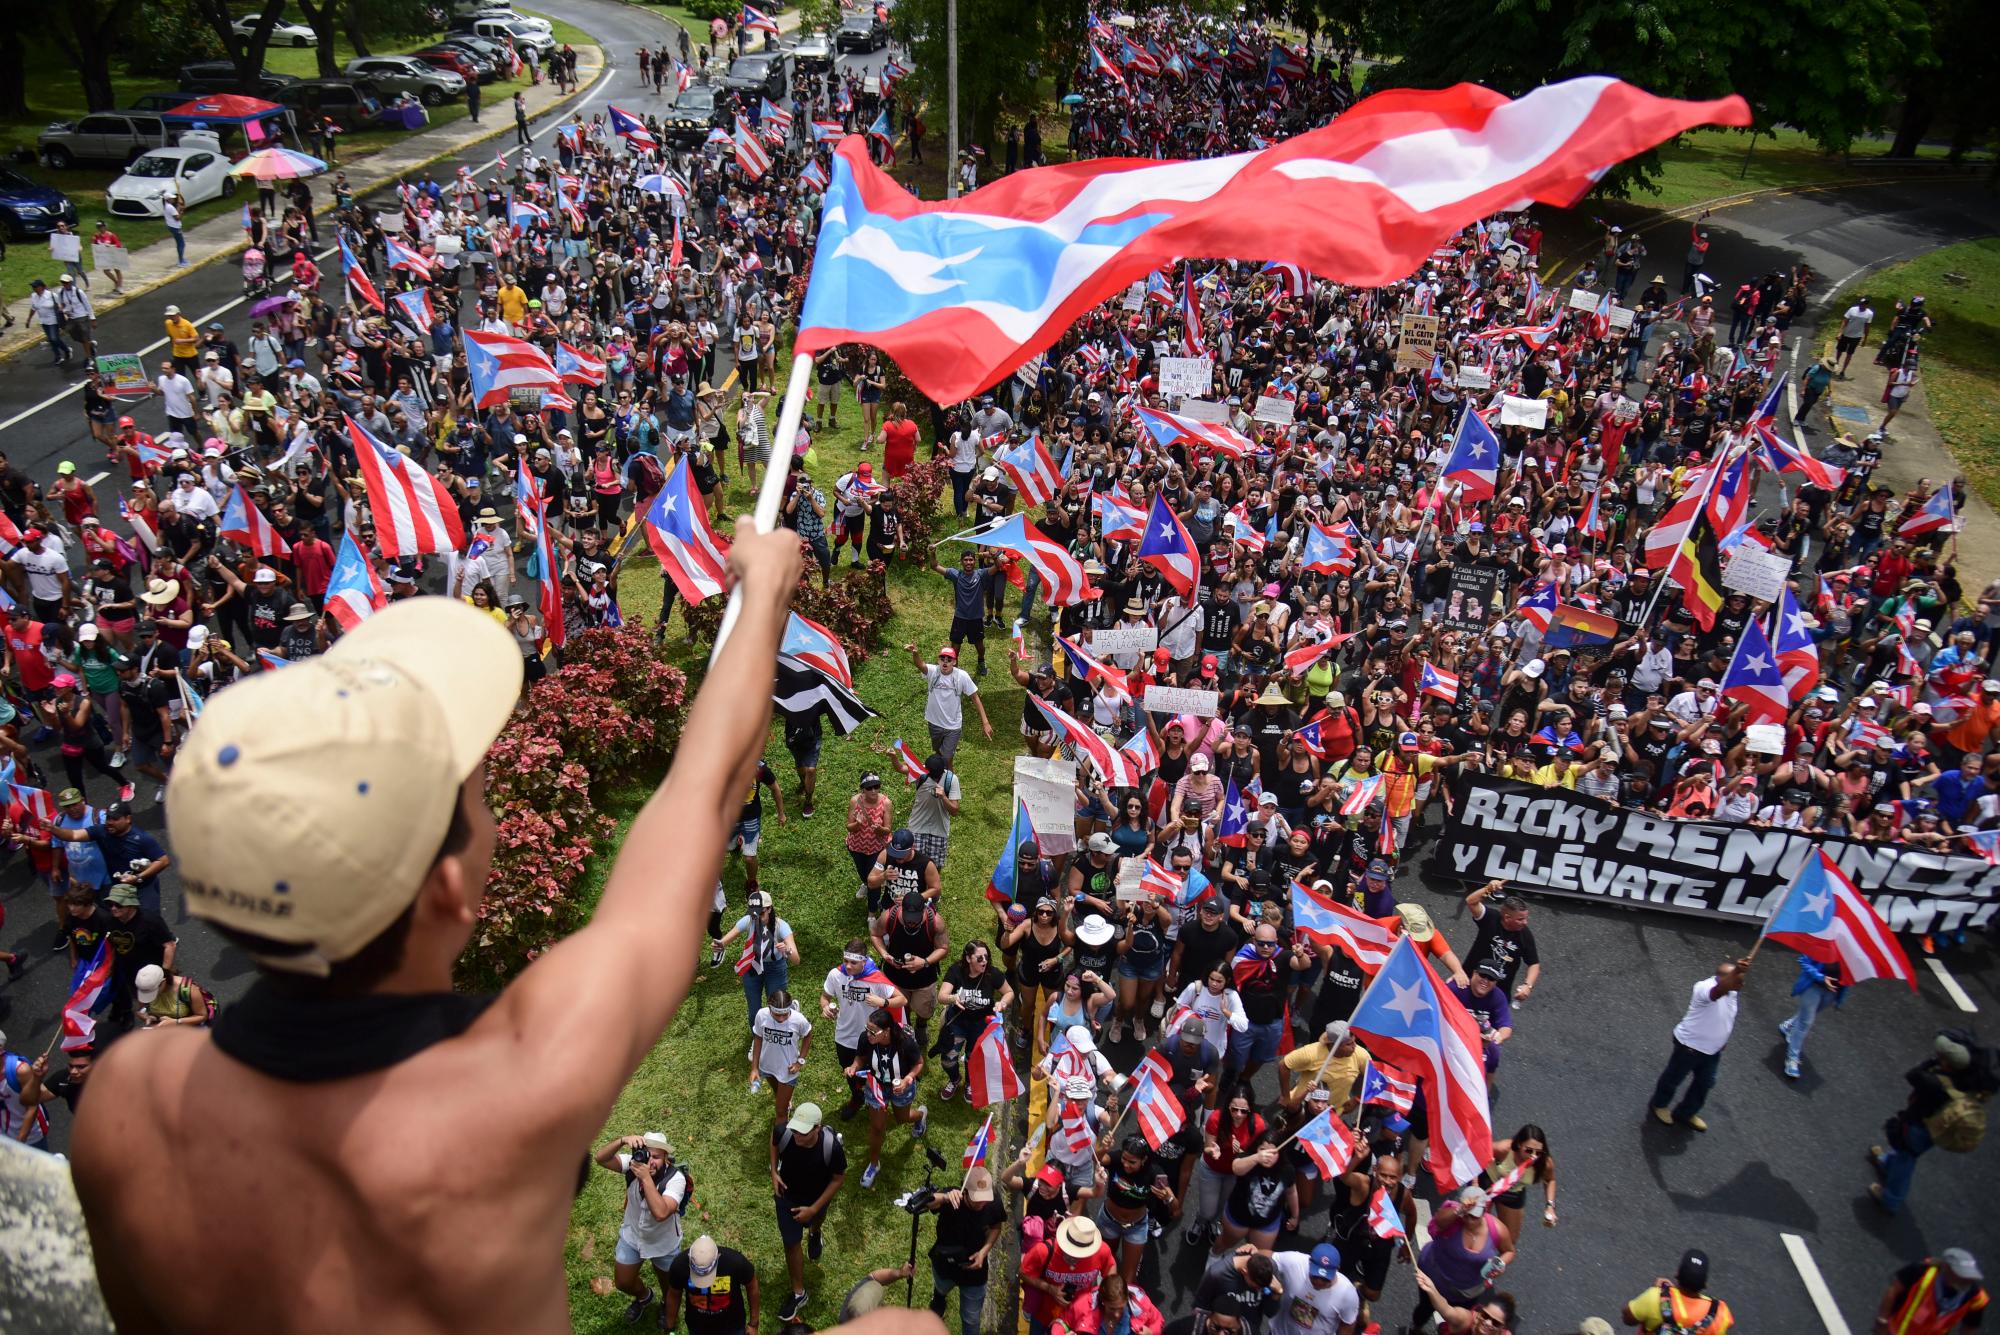 Cientos de personas marchan para celebrar la renuncia del gobernador Ricardo Rossello, quien anunció durante la noche que renunciará el 2 de agosto luego de semanas de protestas por chats en línea obscenos y misóginos, en San Juan, Puerto Rico, el jueves 25 de julio de 2019. 